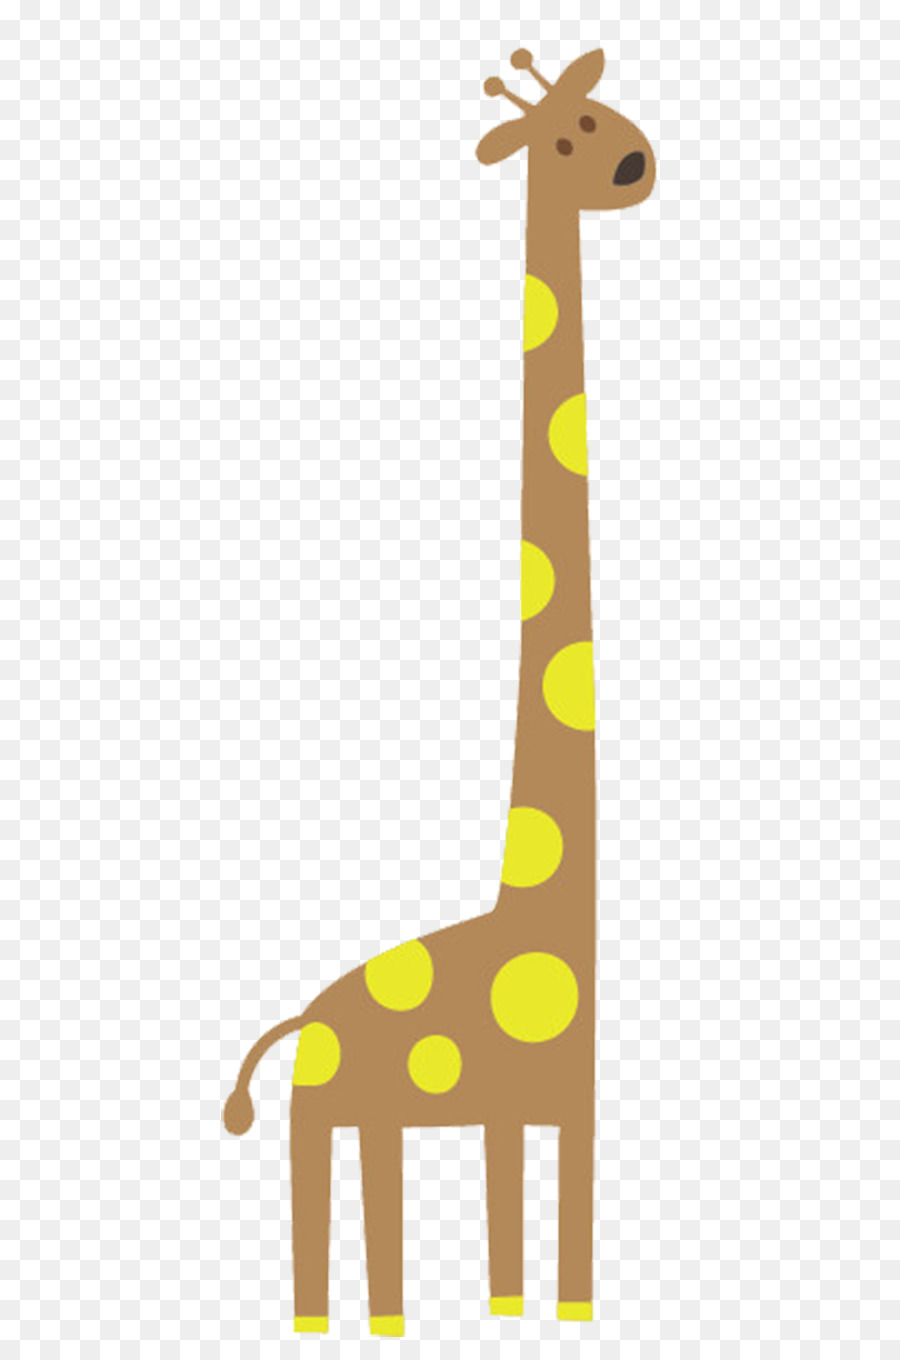 Giraffe Cartoon u0e01u0e32u0e23u0e4cu0e15u0e39u0e19u0e0du0e35u0e48u0e1bu0e38u0e48u0e19 Clip-art - Cartoon-Giraffe